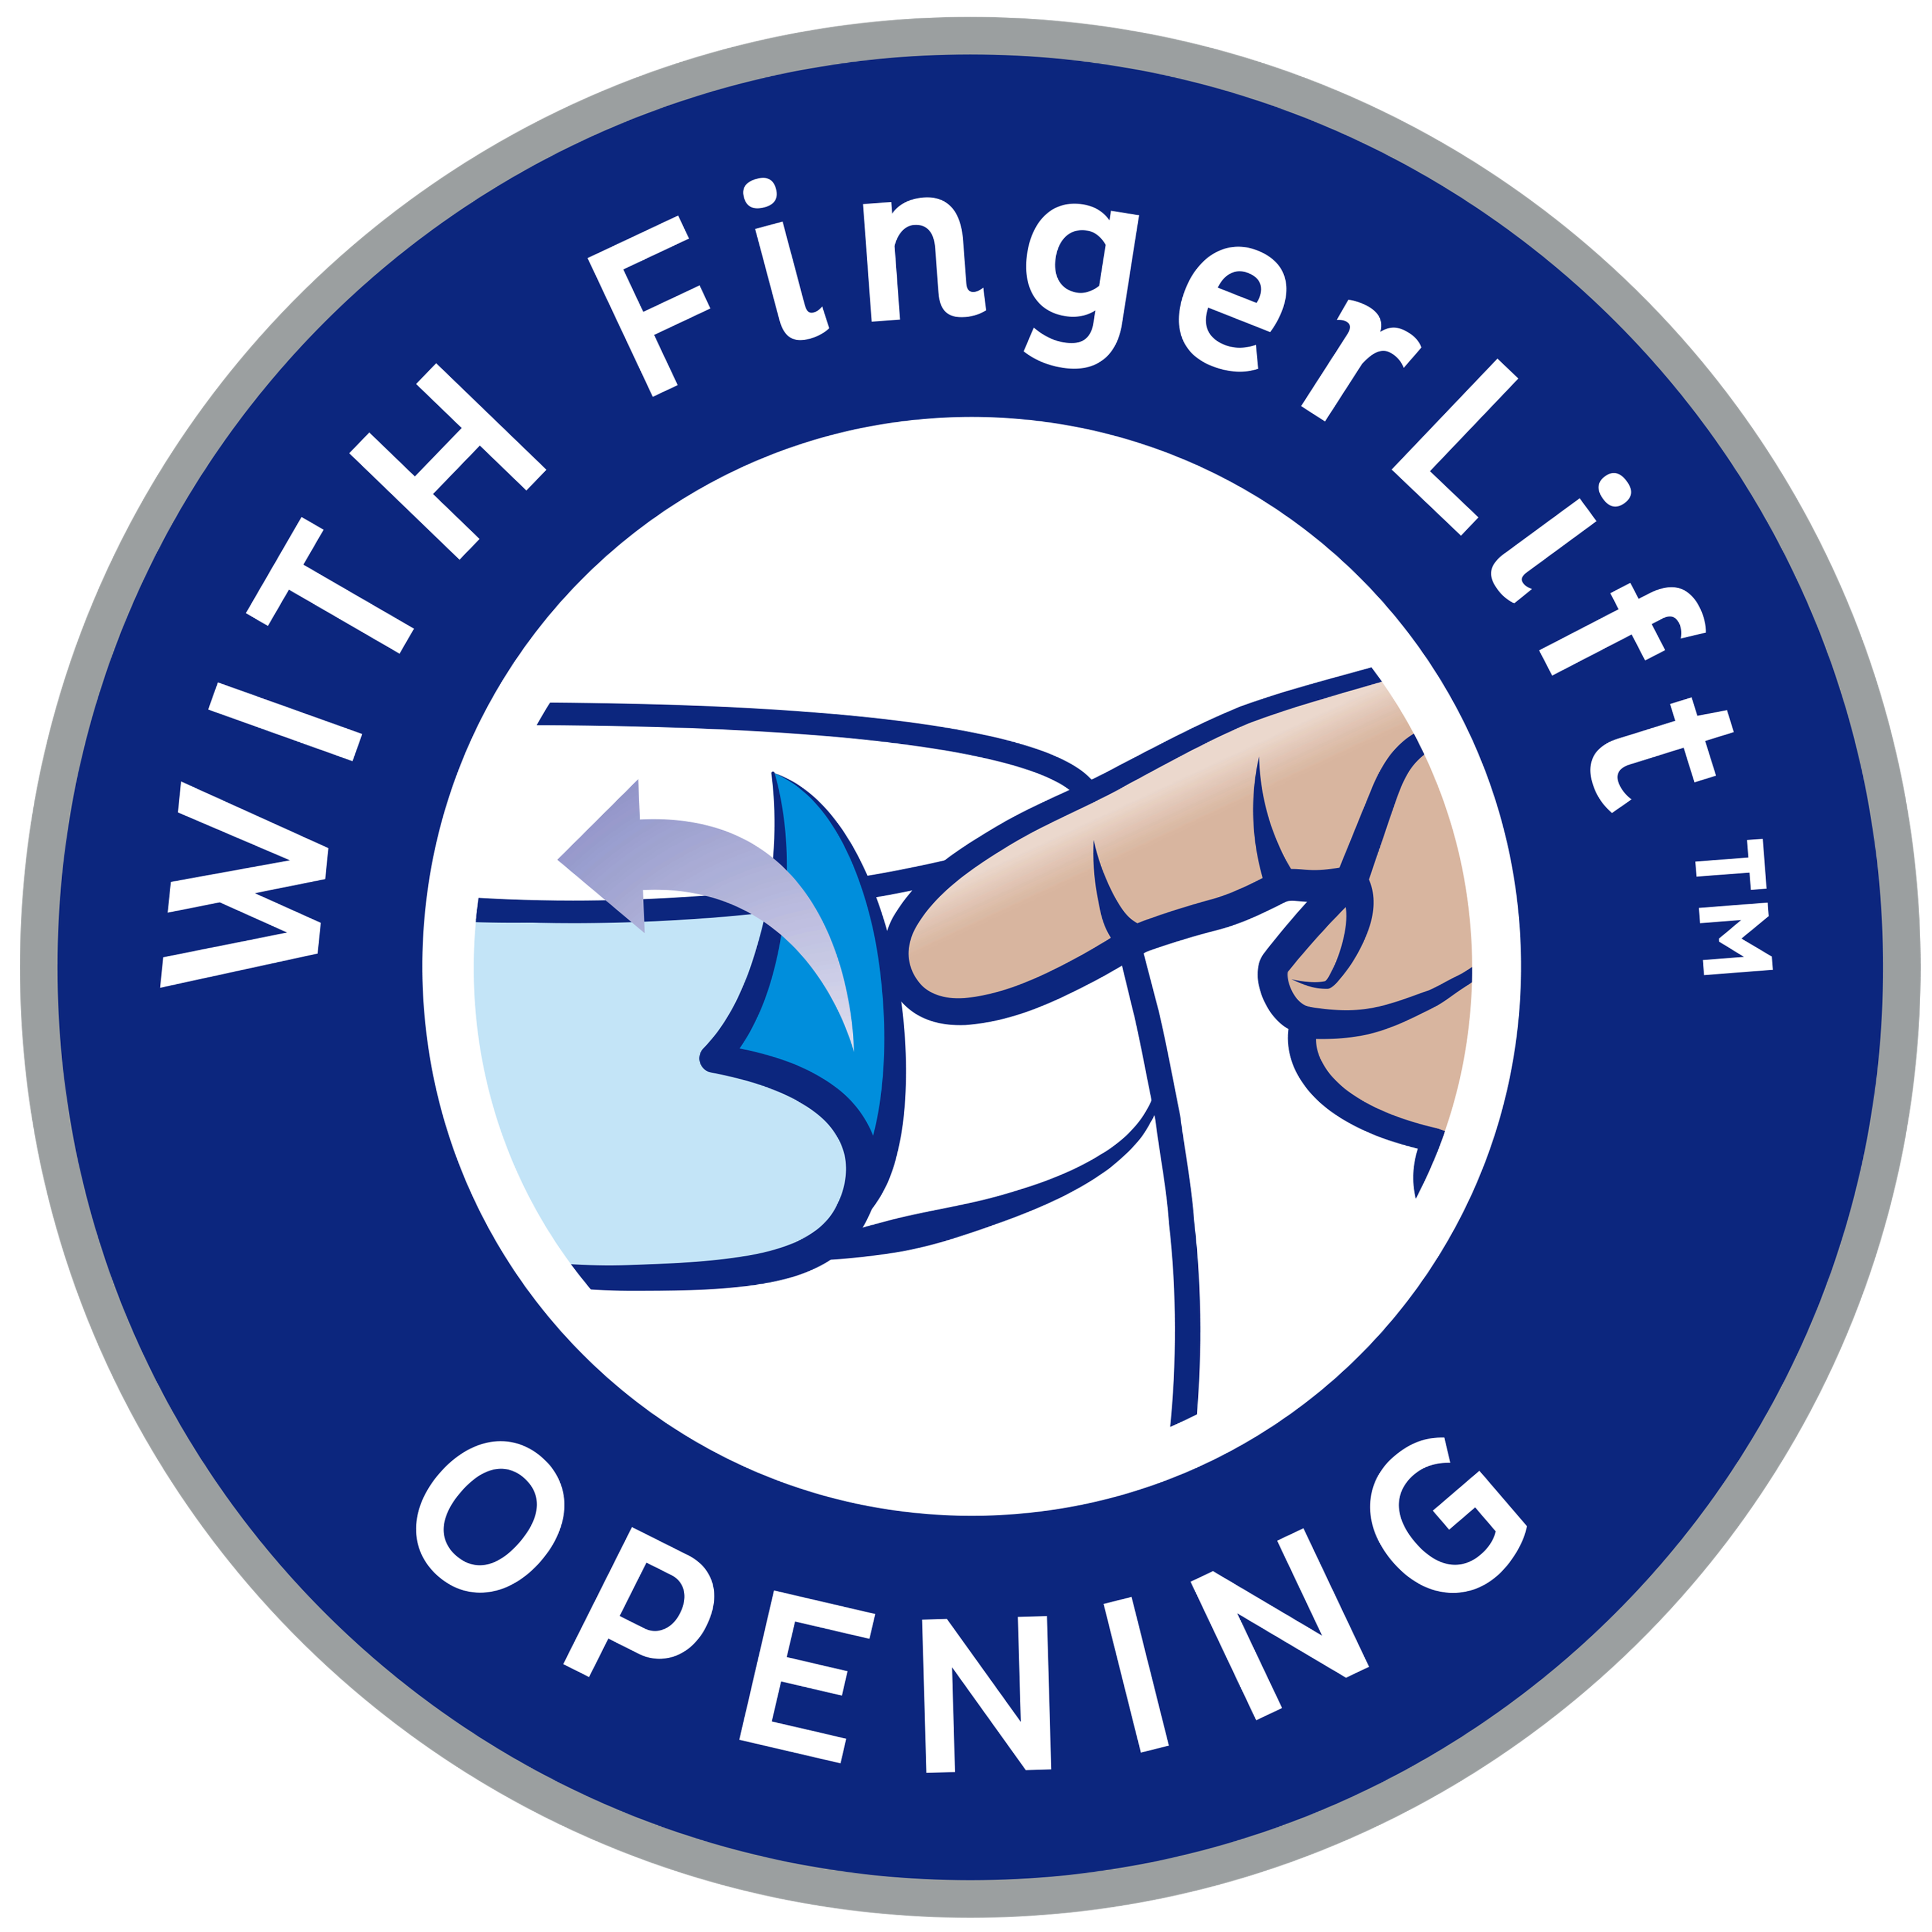 Com abertura FingerLift